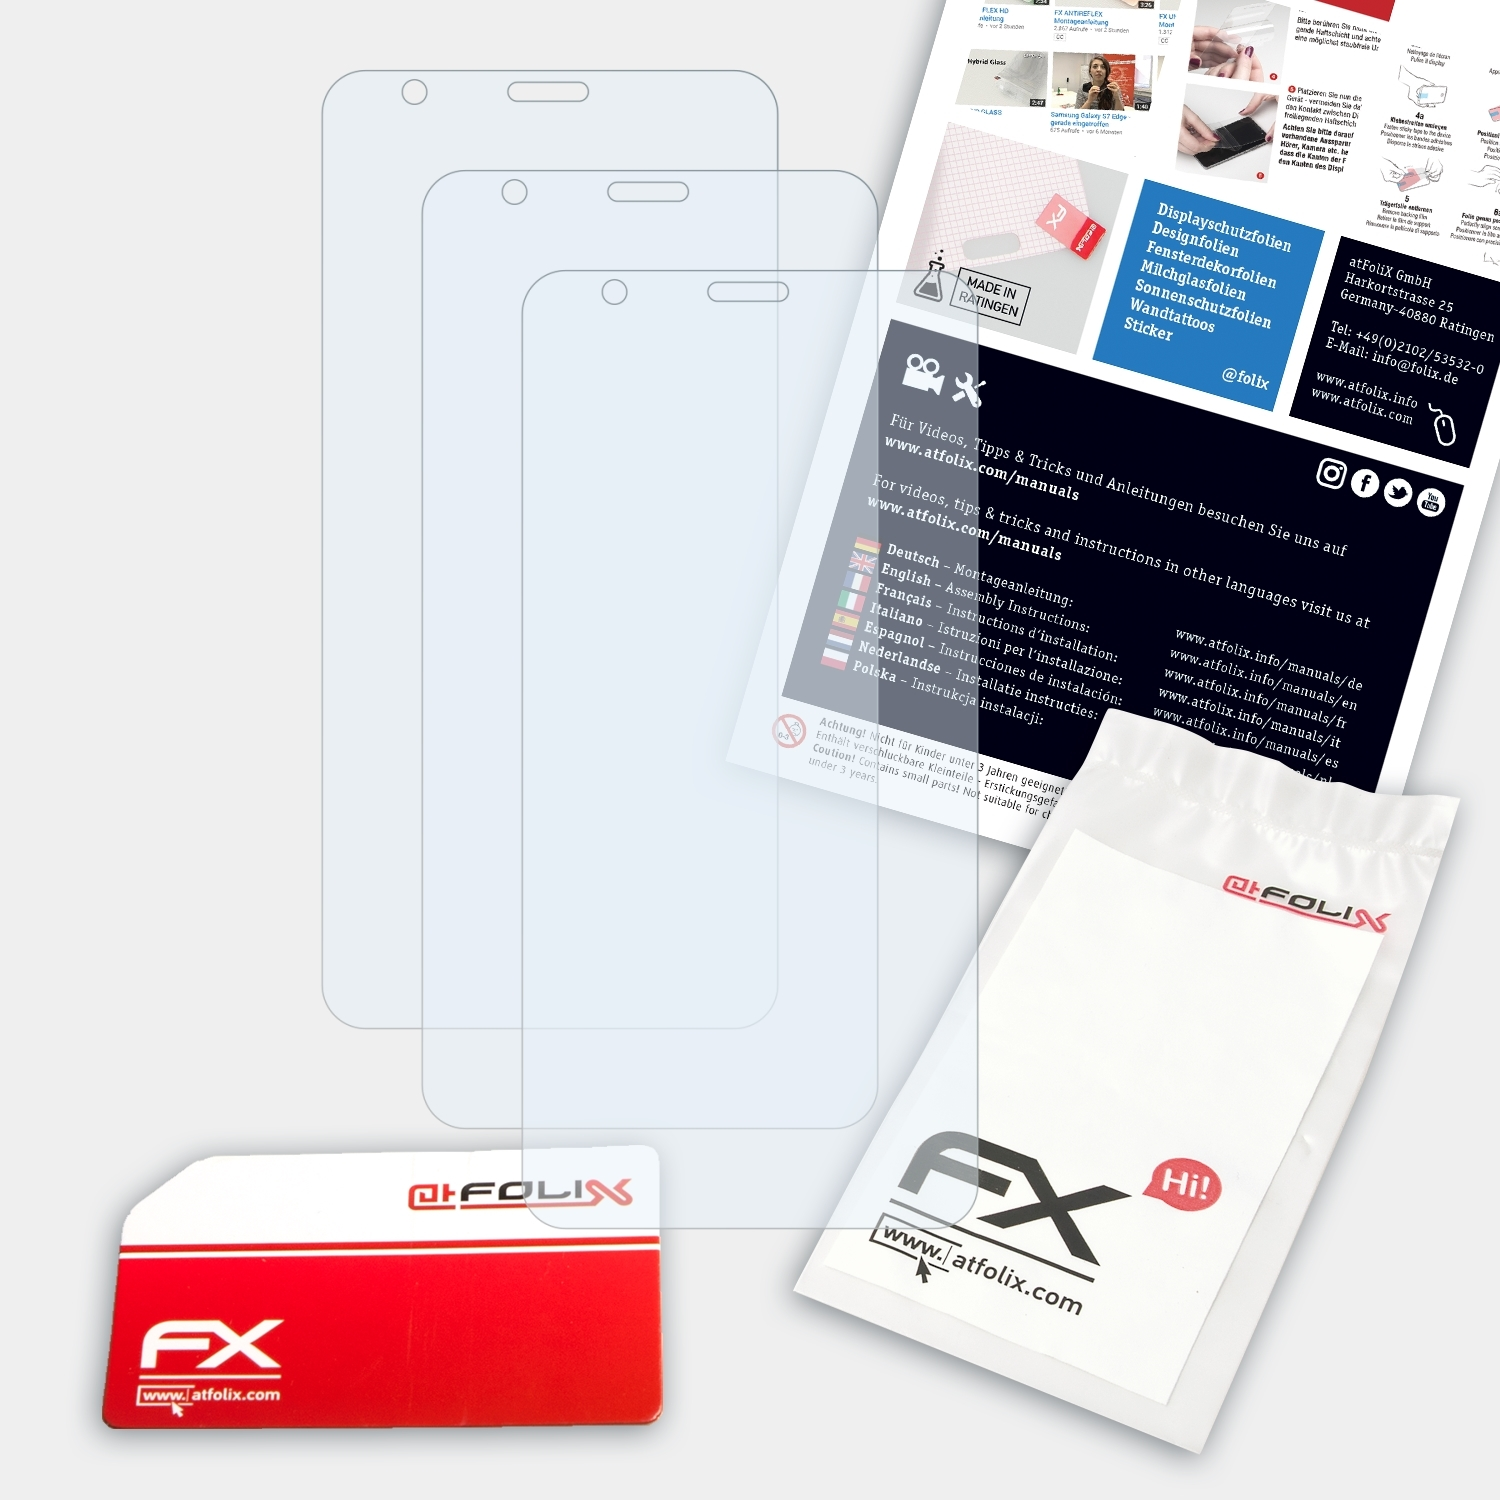 ATFOLIX 3x FX-Clear Displayschutz(für ZTE Blade L8)